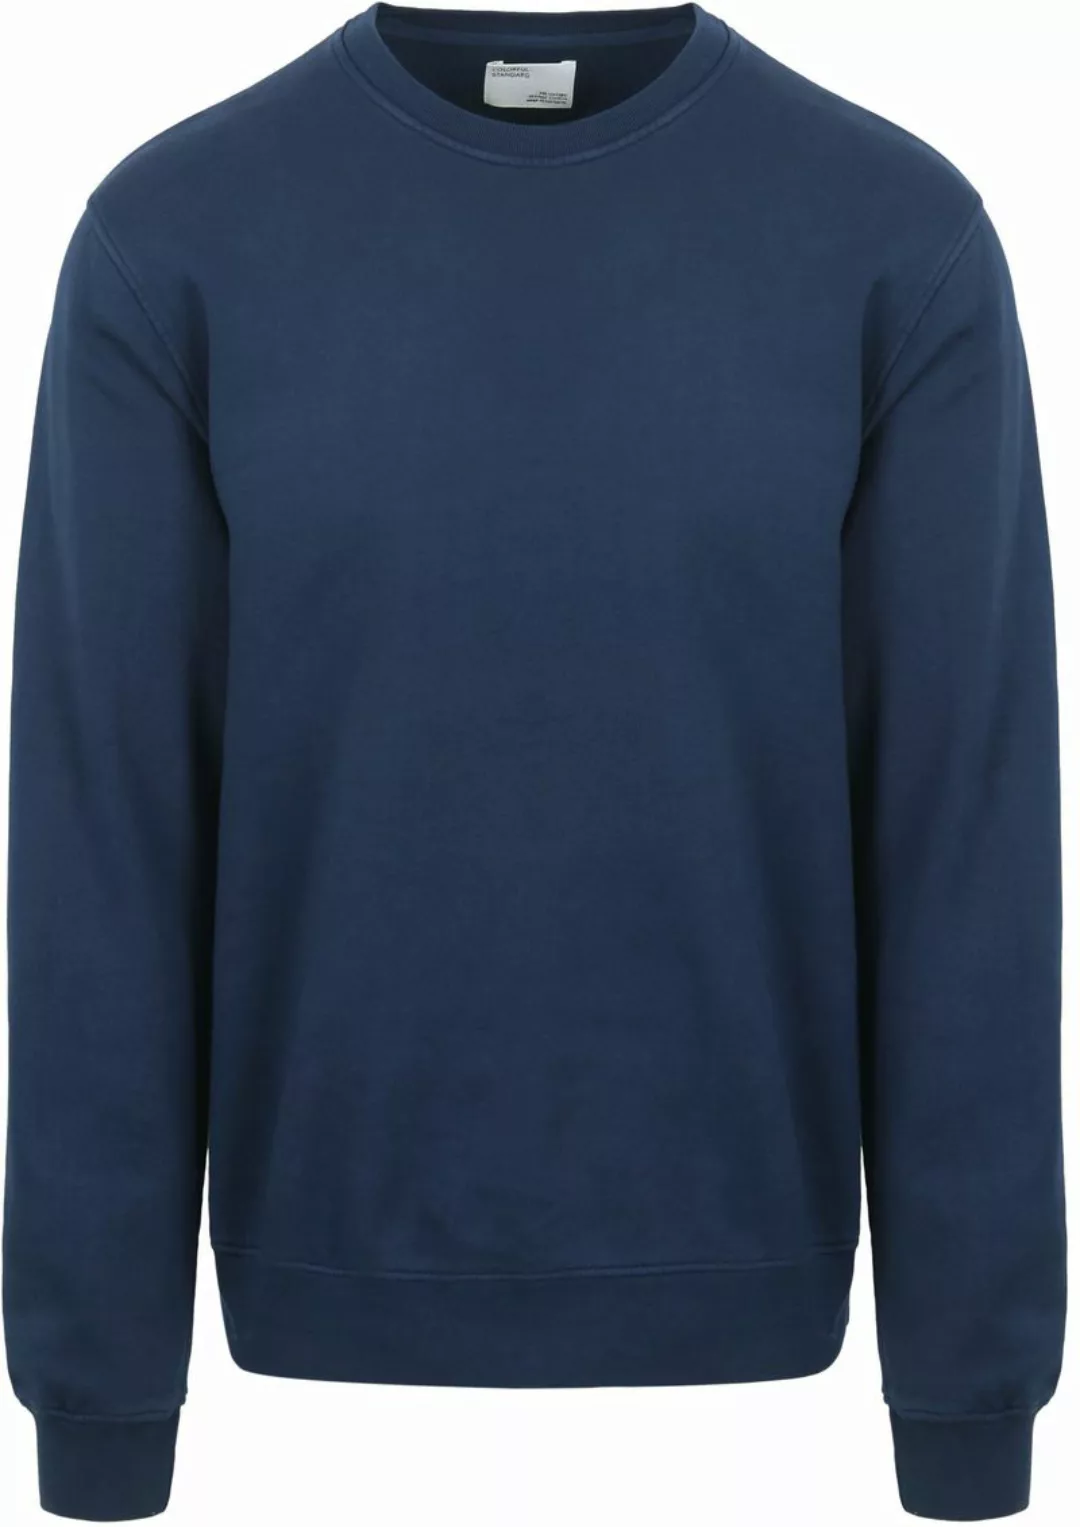 Colorful Standard Sweater Dunkelblau - Größe L günstig online kaufen